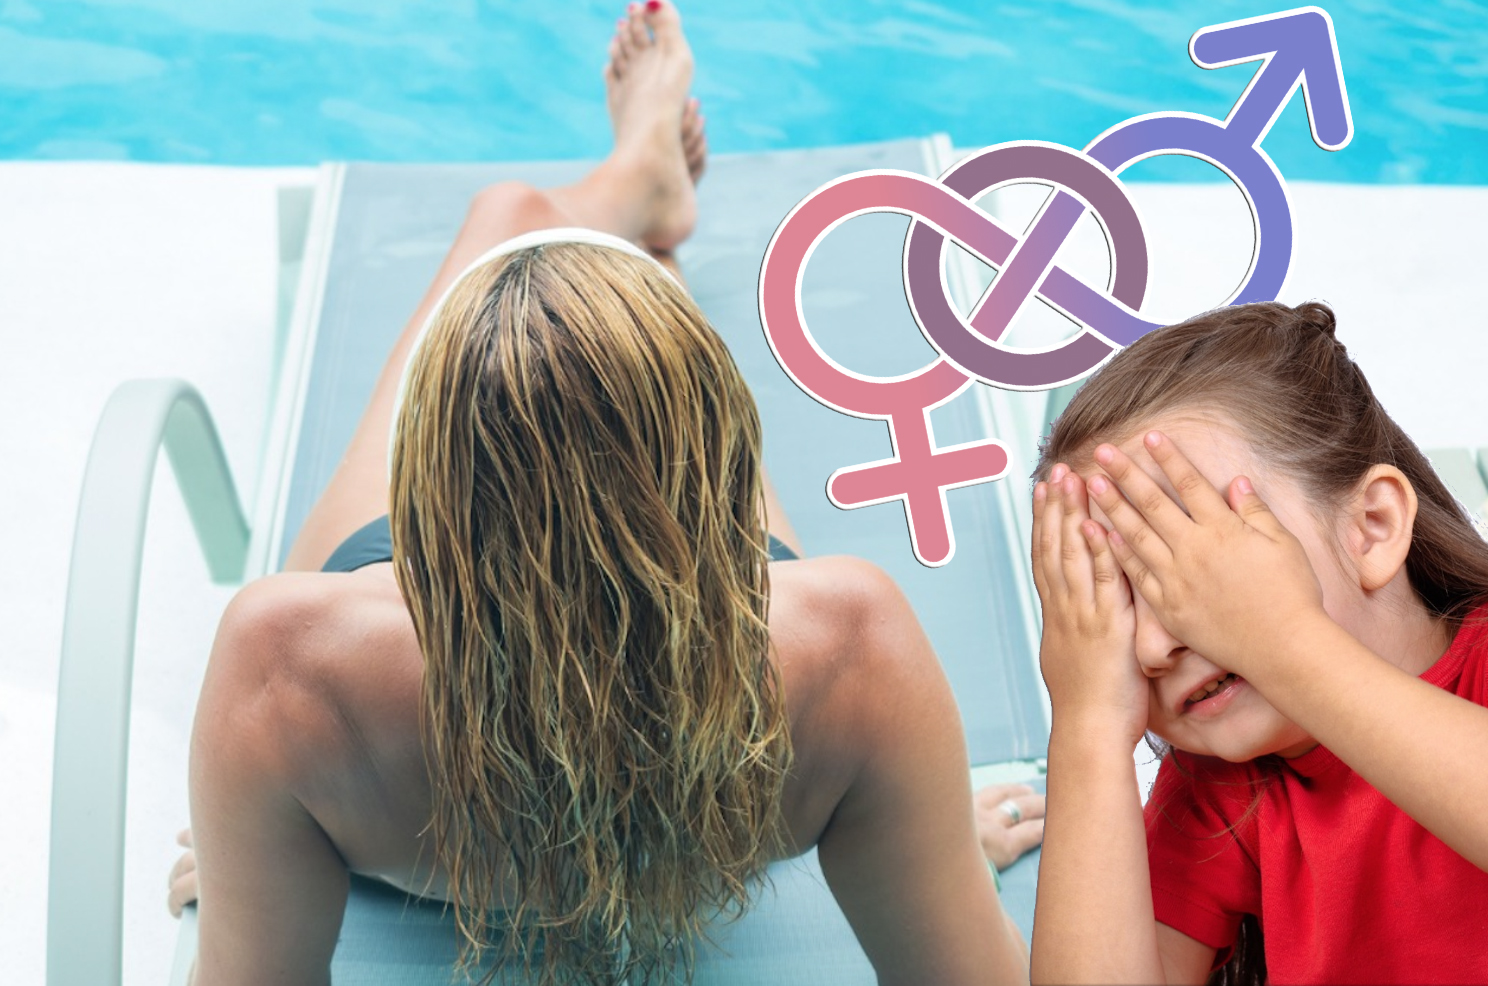 Le derive dell'identità di genere: ora arriva il topless in piscina 1